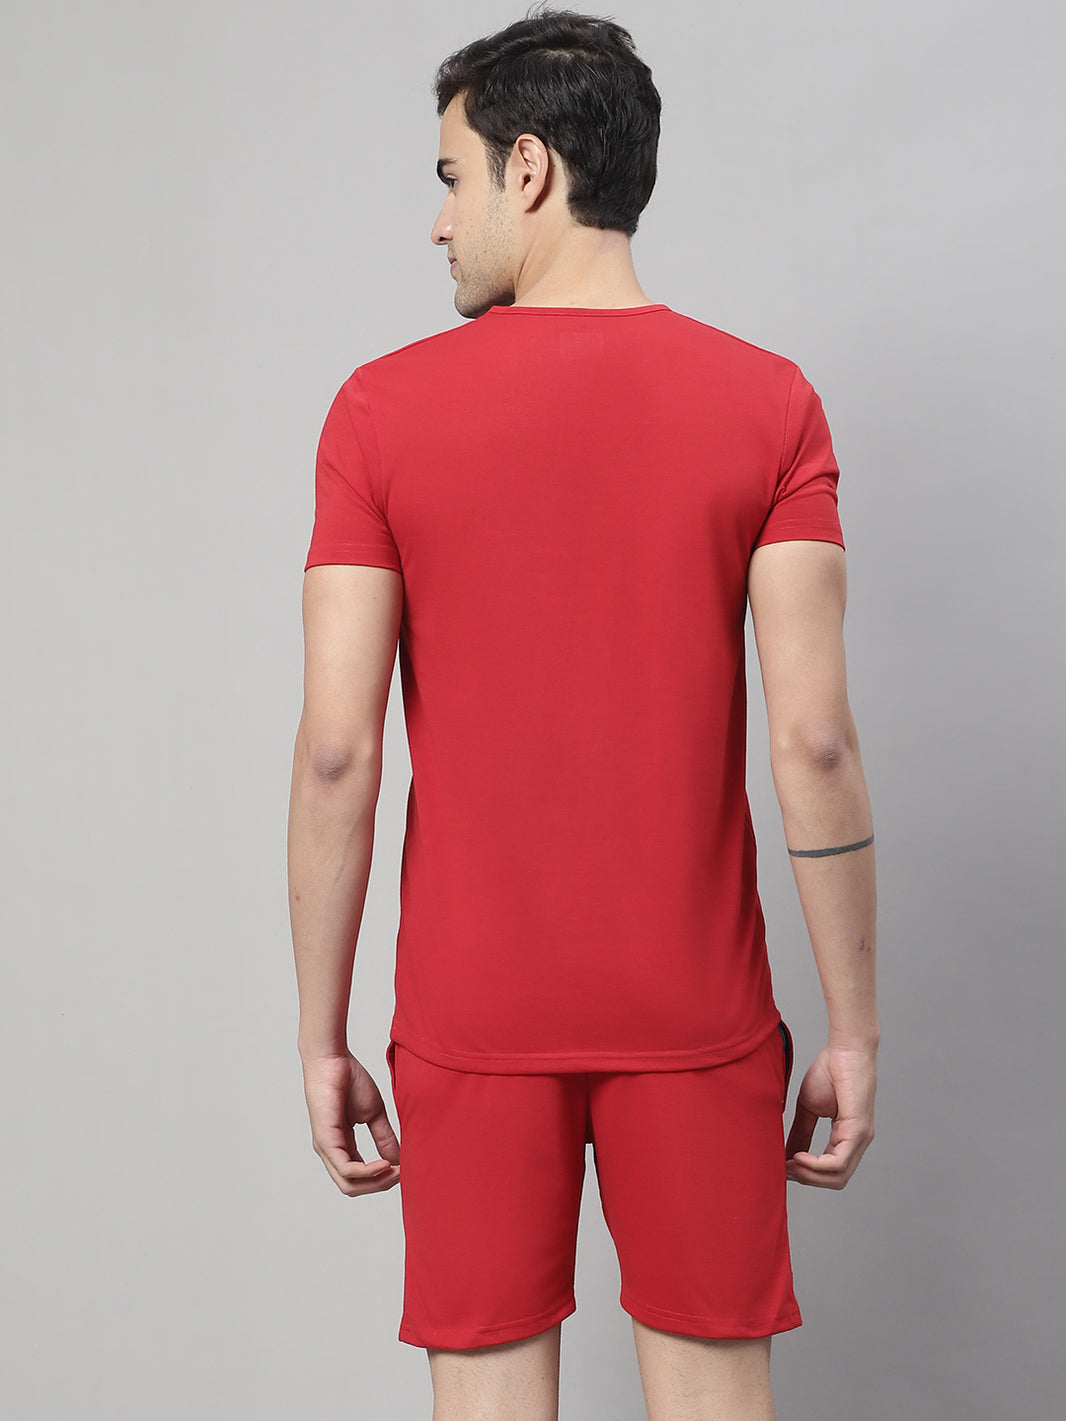 Vimal Jonney Red Cotton Solid Co-ord Set Tracksuit For Men(Zip On 1 Side Pocket)